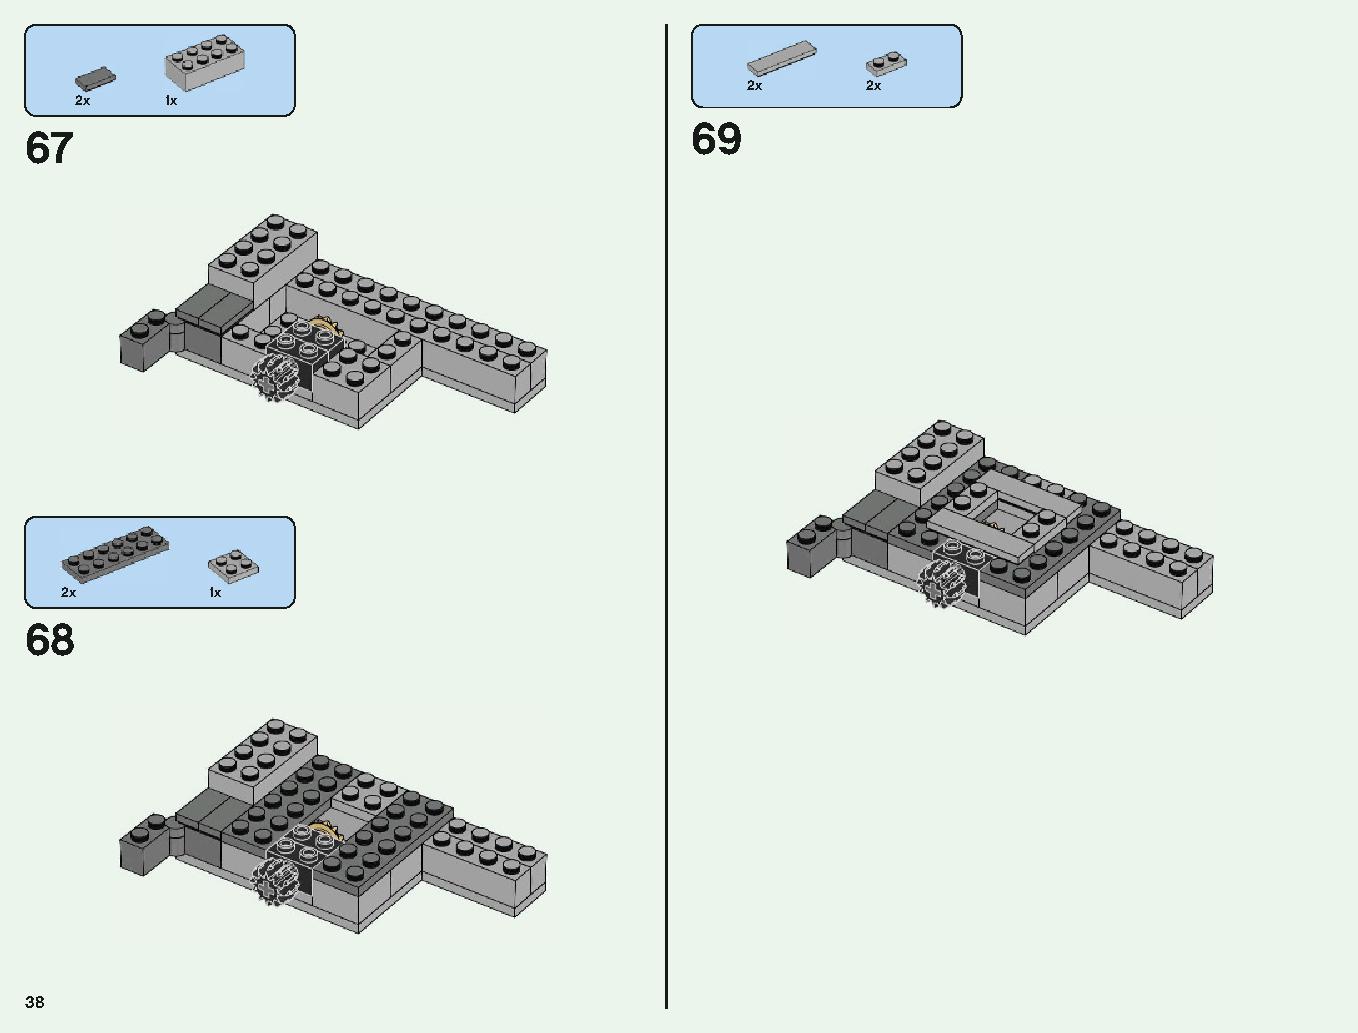 ベッドロックの冒険 21147 レゴの商品情報 レゴの説明書・組立方法 38 page